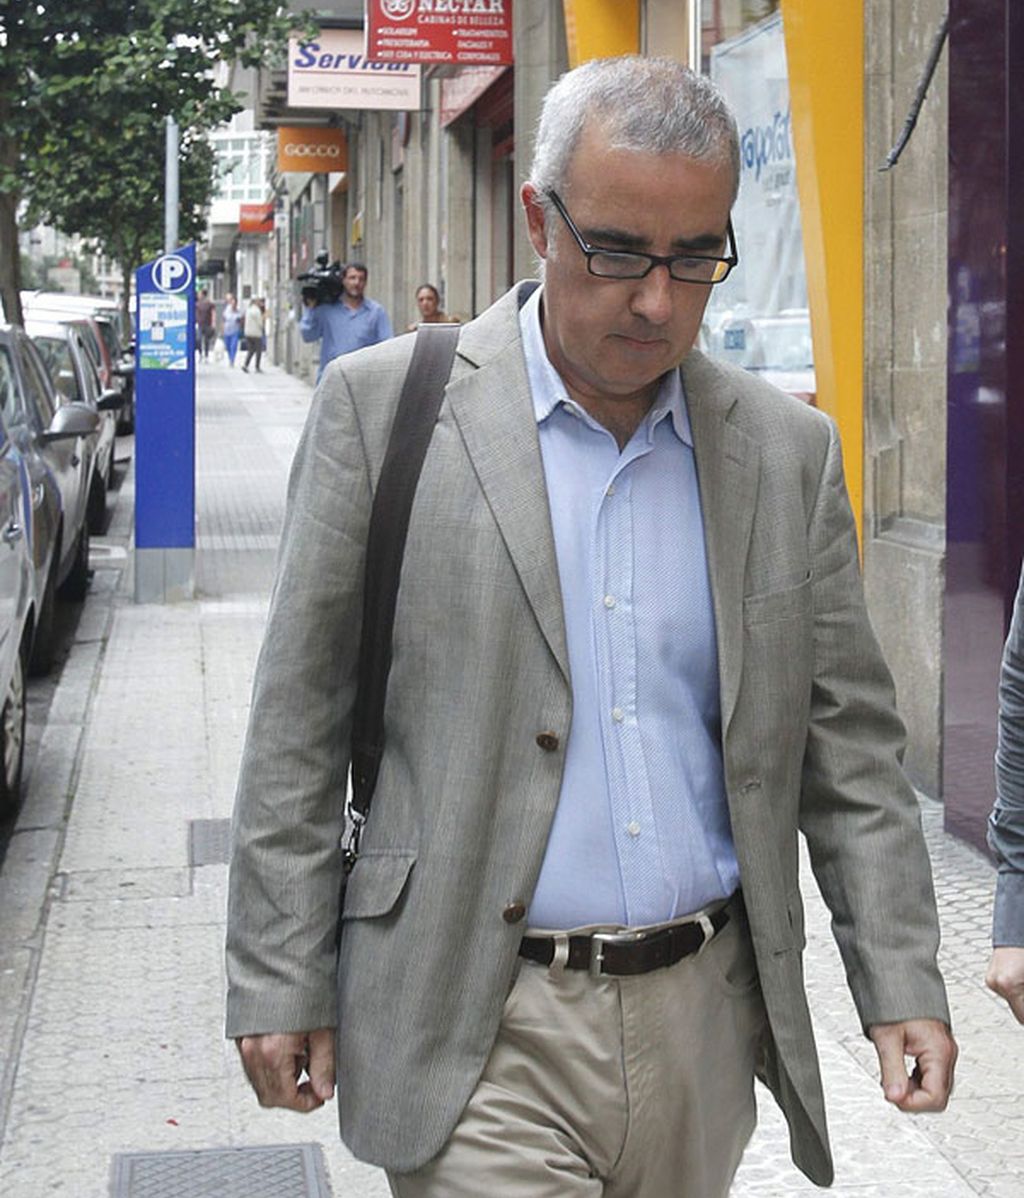 Alfonso Basterra ha sido agredido en prisión, según 'El Correo gallego'